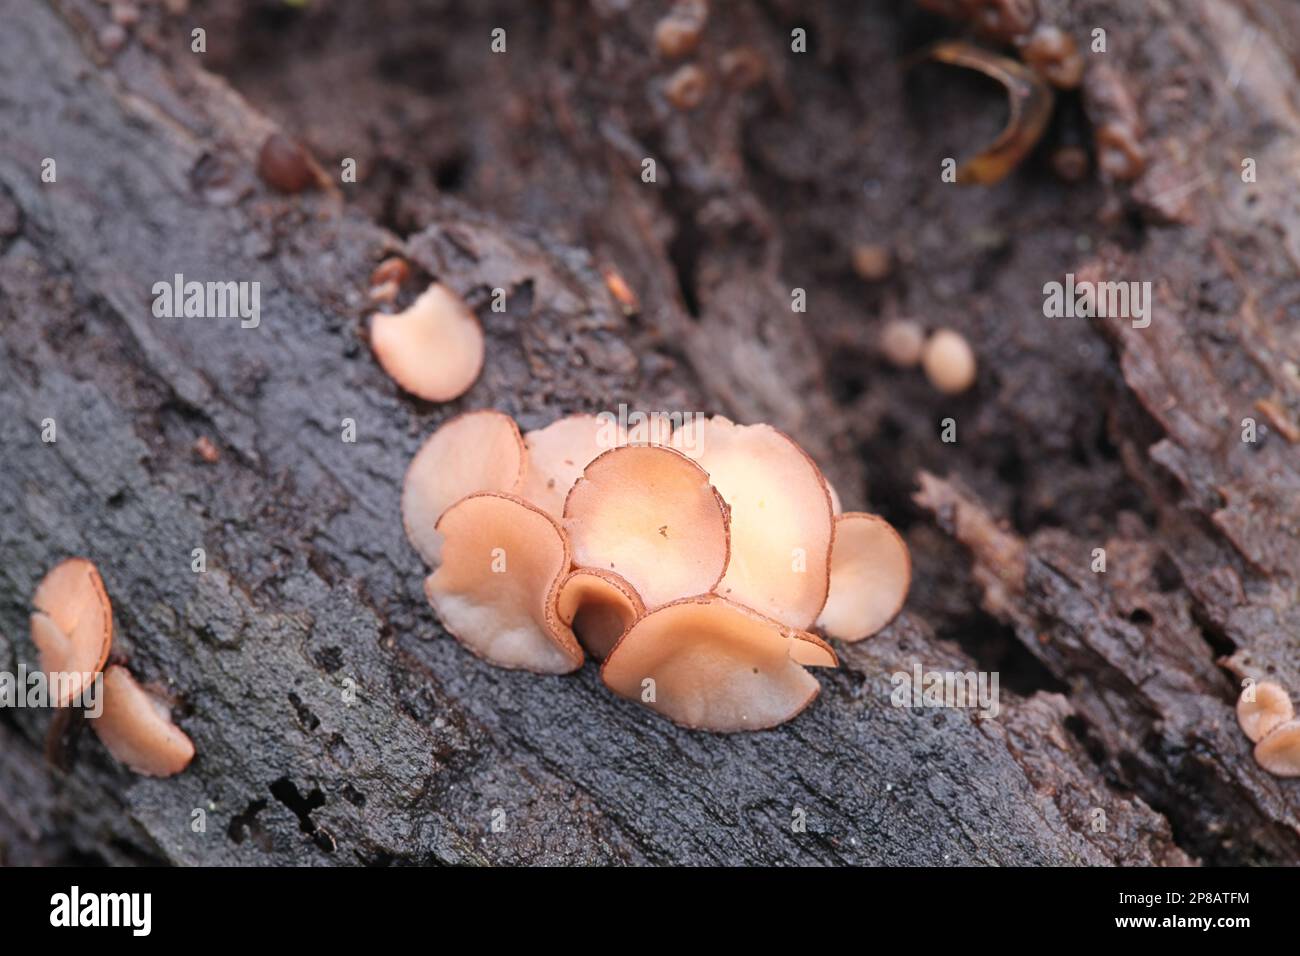 Aleuriella personata, also known as Pyrenopeziza personata, wild fungus from Finland, no common English name Stock Photo